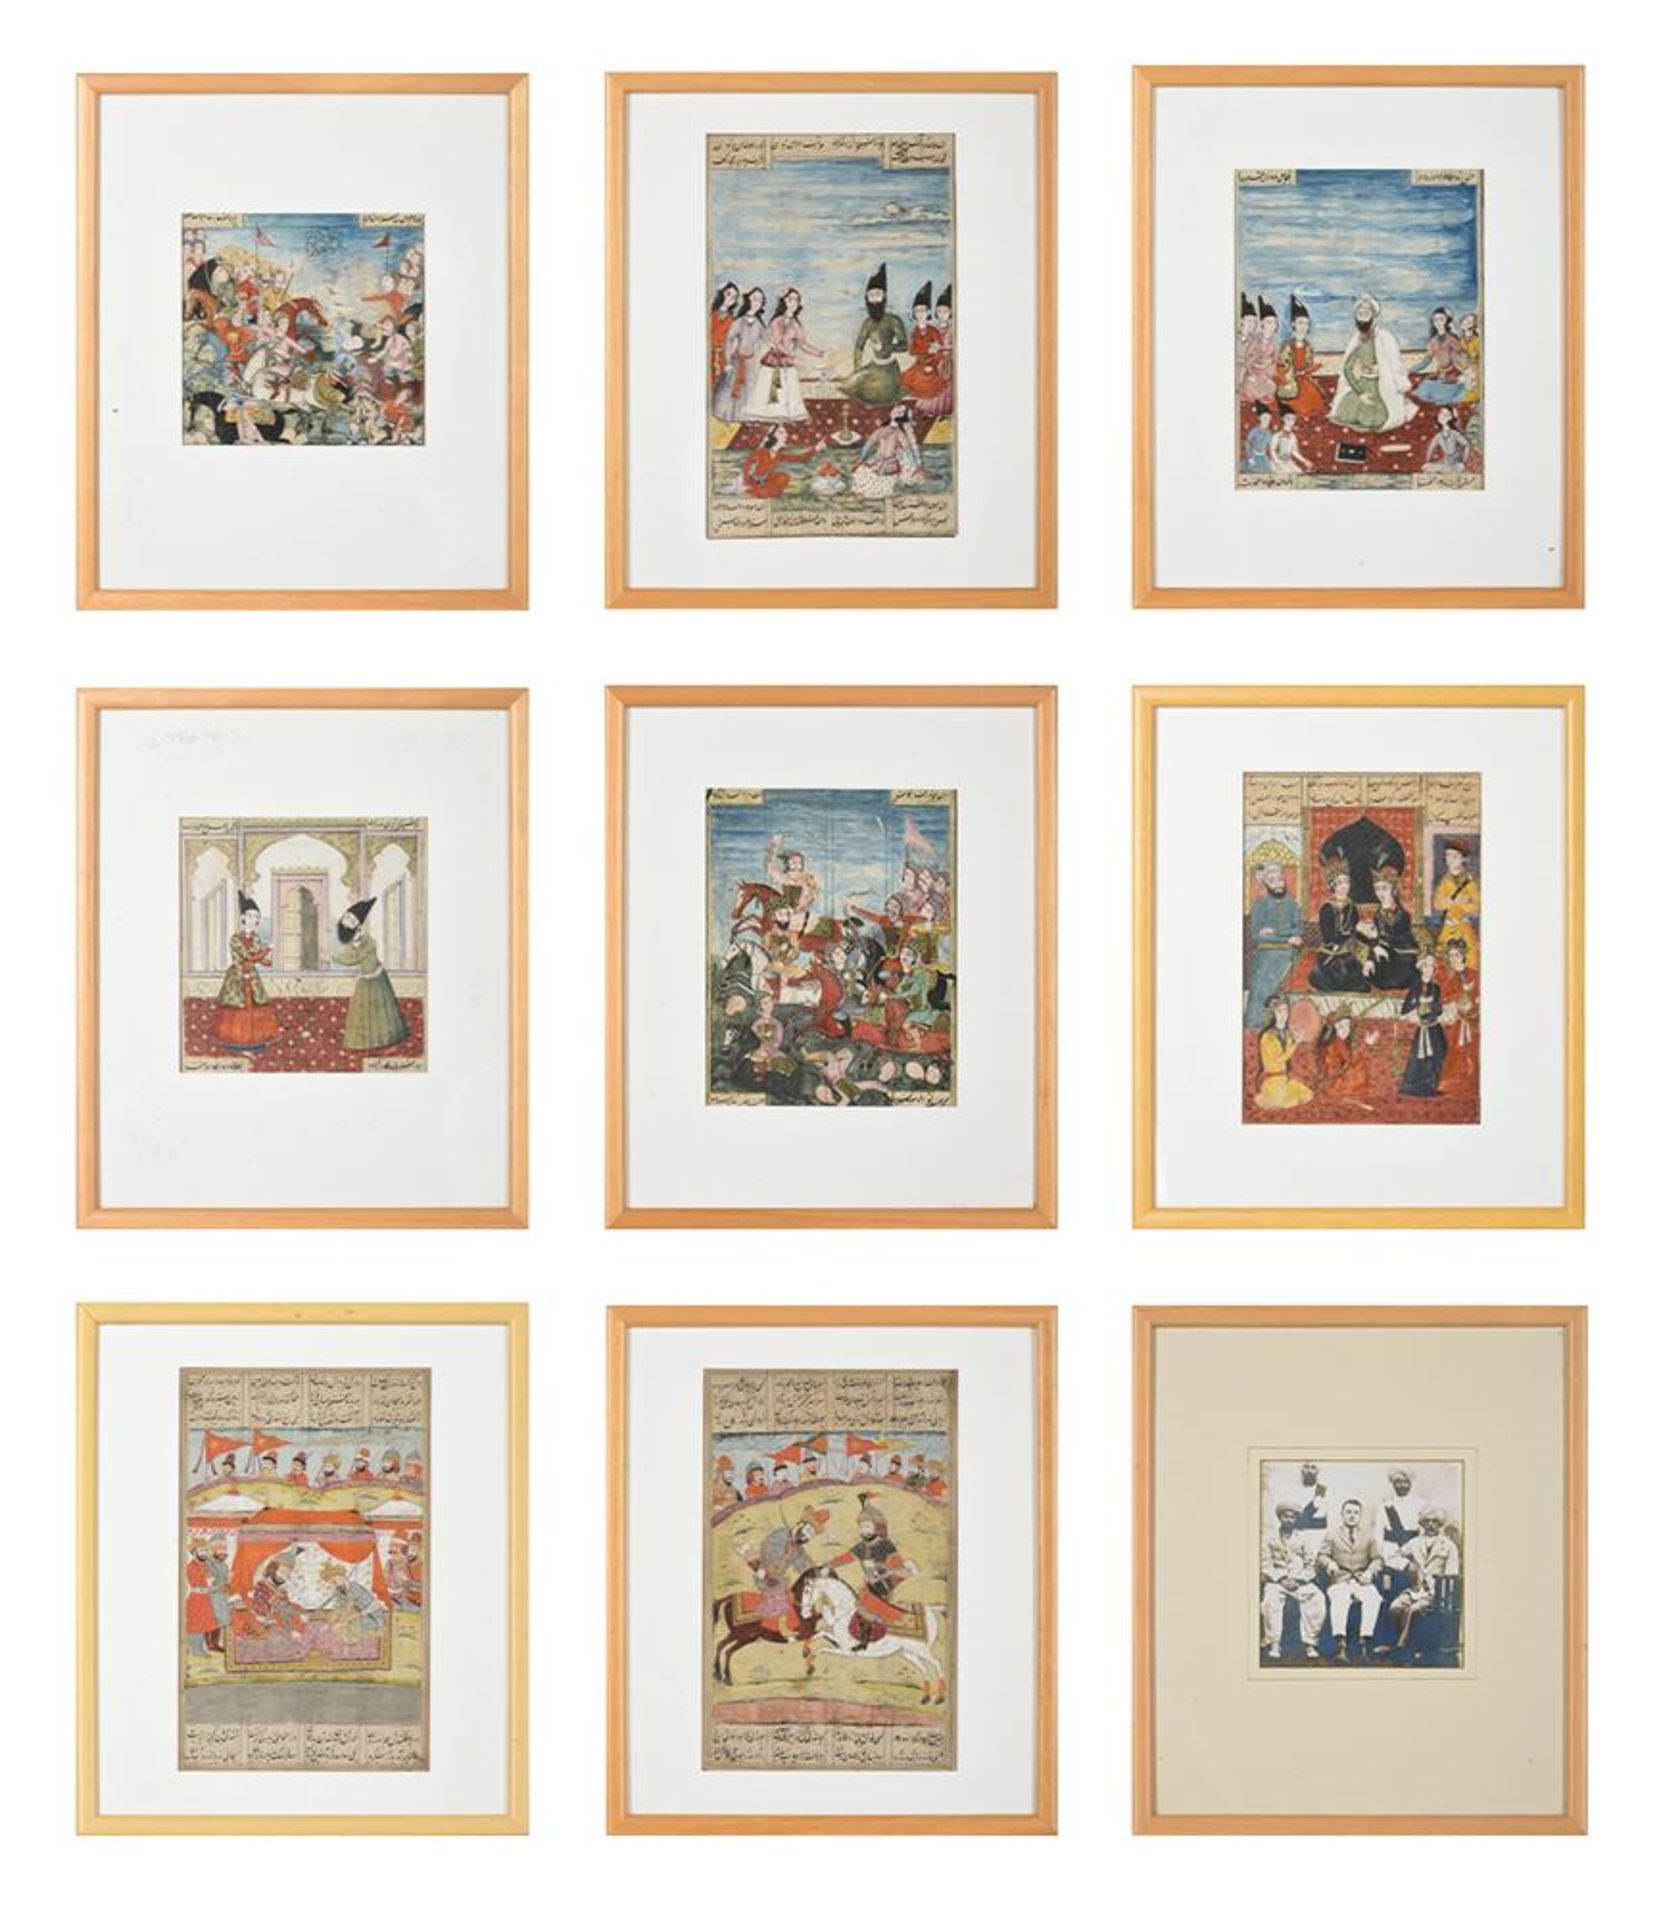 Eight illustrated manuscript folios